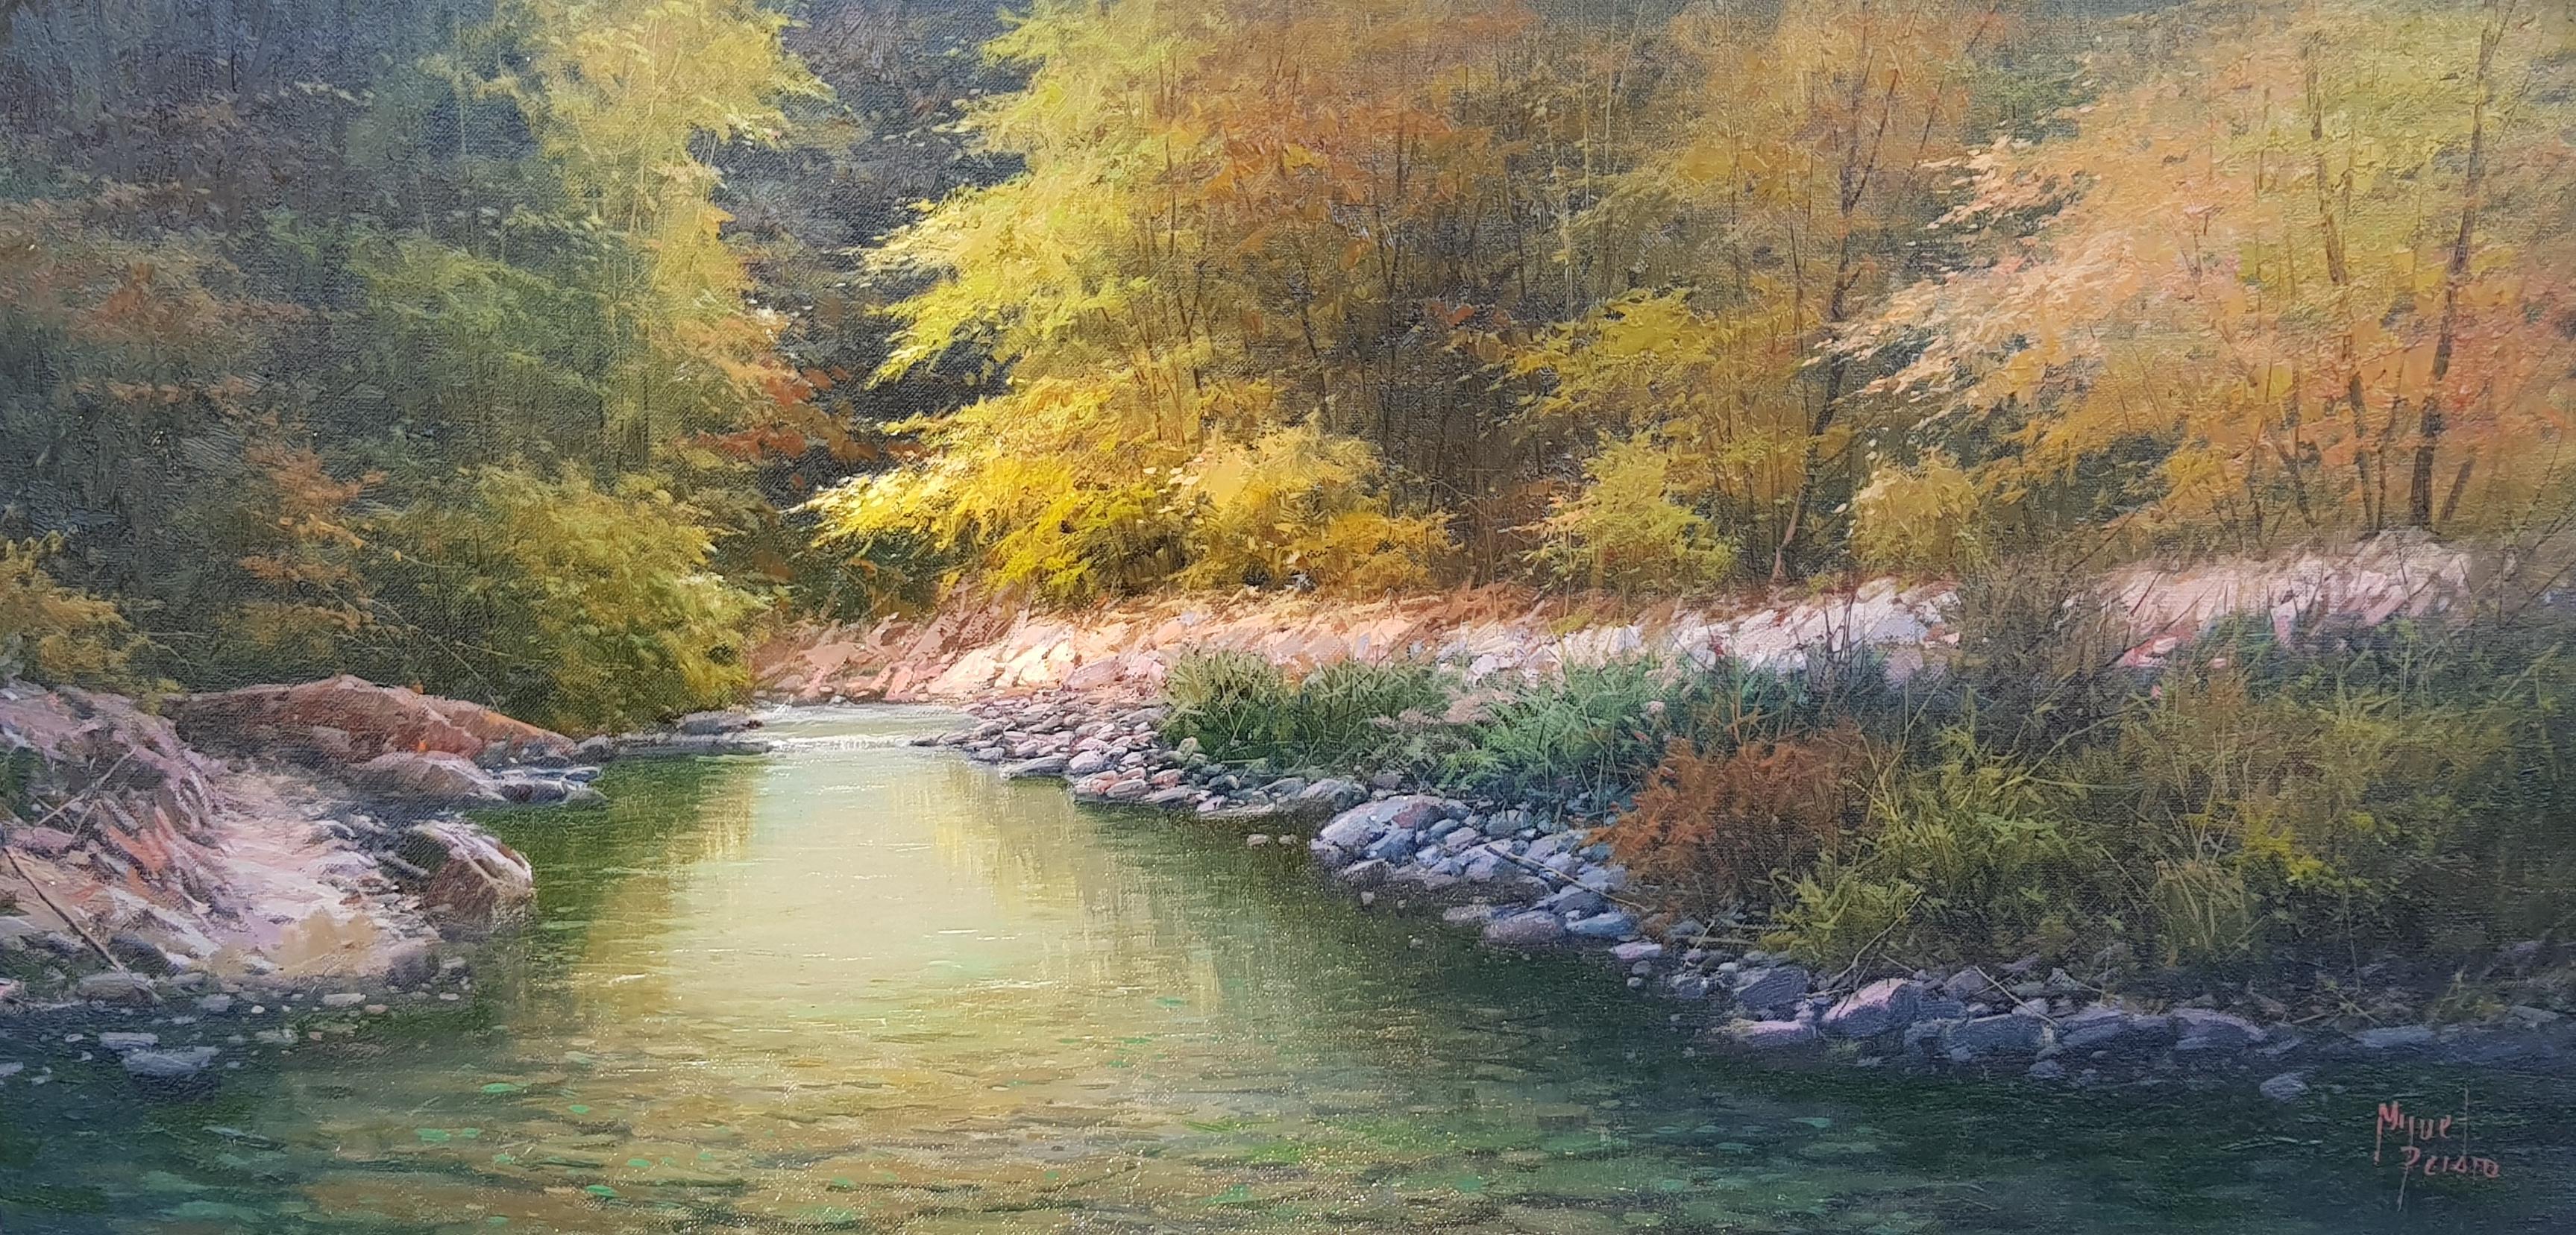 Landscape Painting Miguel Peidro - 'Green River Valley' Paysage réaliste contemporain Peinture de Miguel Piedro 